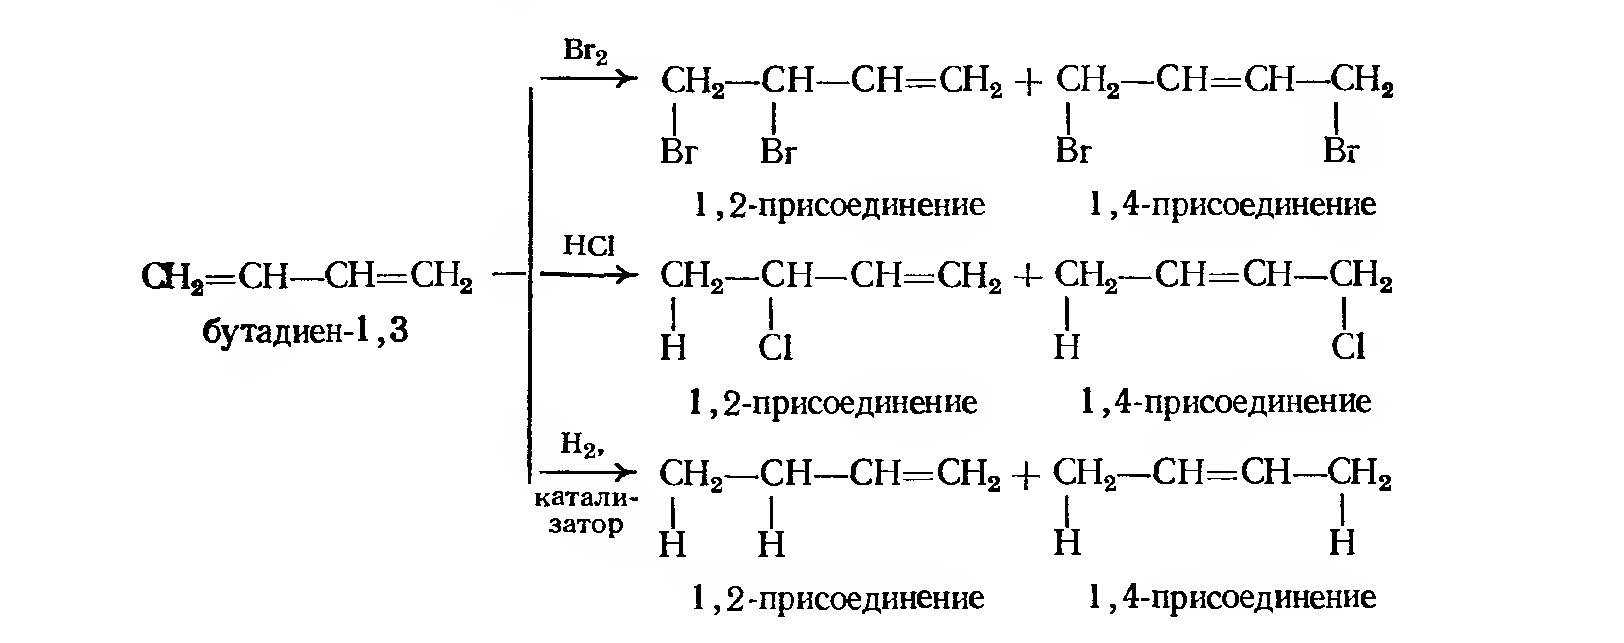 Схема полимеризации хлоропрена. Присоединение hbr к бутадиену 1,3. Гидробромирование бутадиена-1.3. Бутадиен 13 и бромоводород. Хлорирование бутадиена